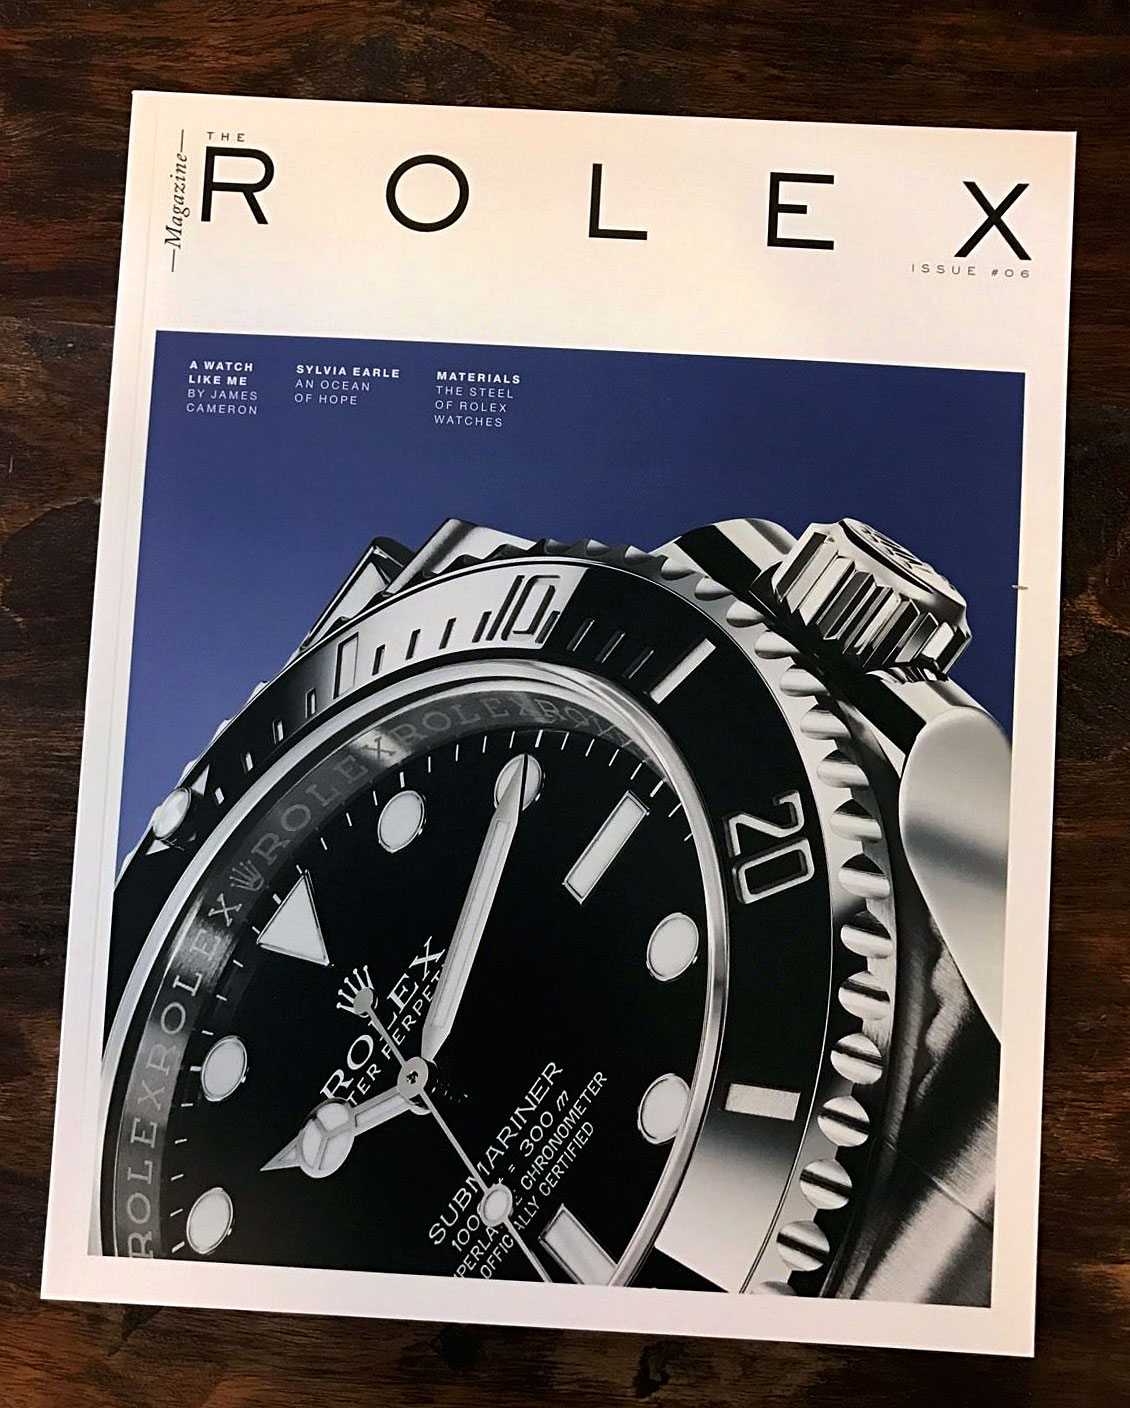 rolex magazine issue 1